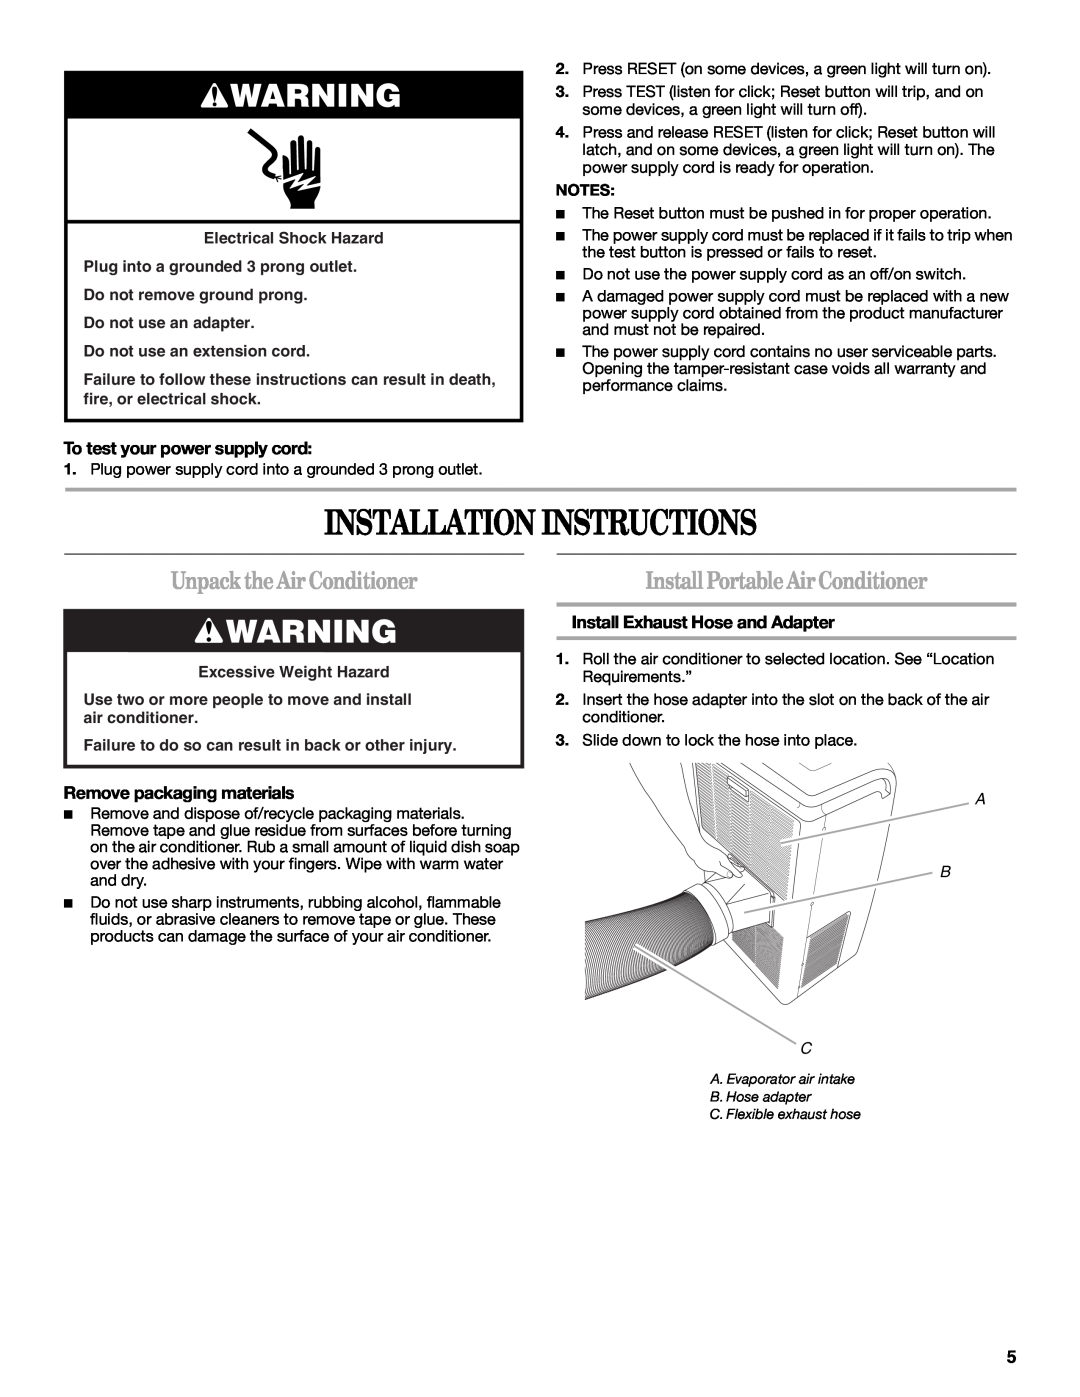 Whirlpool 1328891 manual Installation Instructions, UnpacktheAirConditioner, InstallPortableAirConditioner, A B C 